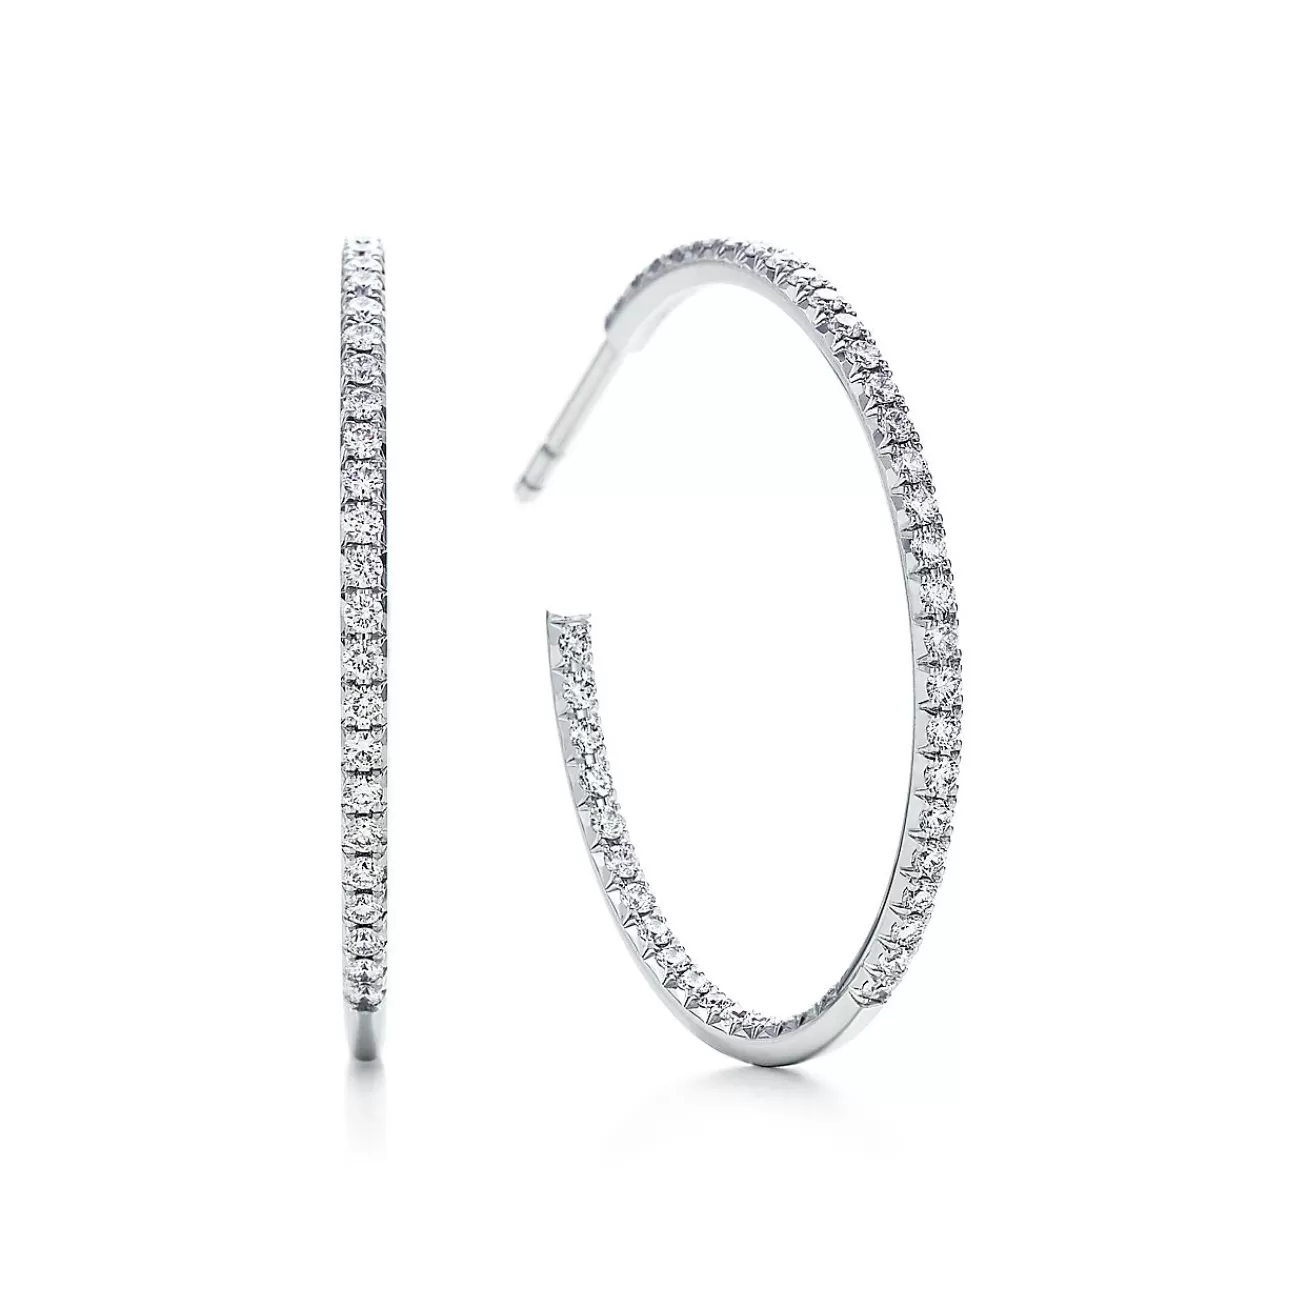 Tiffany & Co. Tiffany Metro hoop earrings in 18k white gold with diamonds, large. | ^ Earrings | Diamond Jewelry